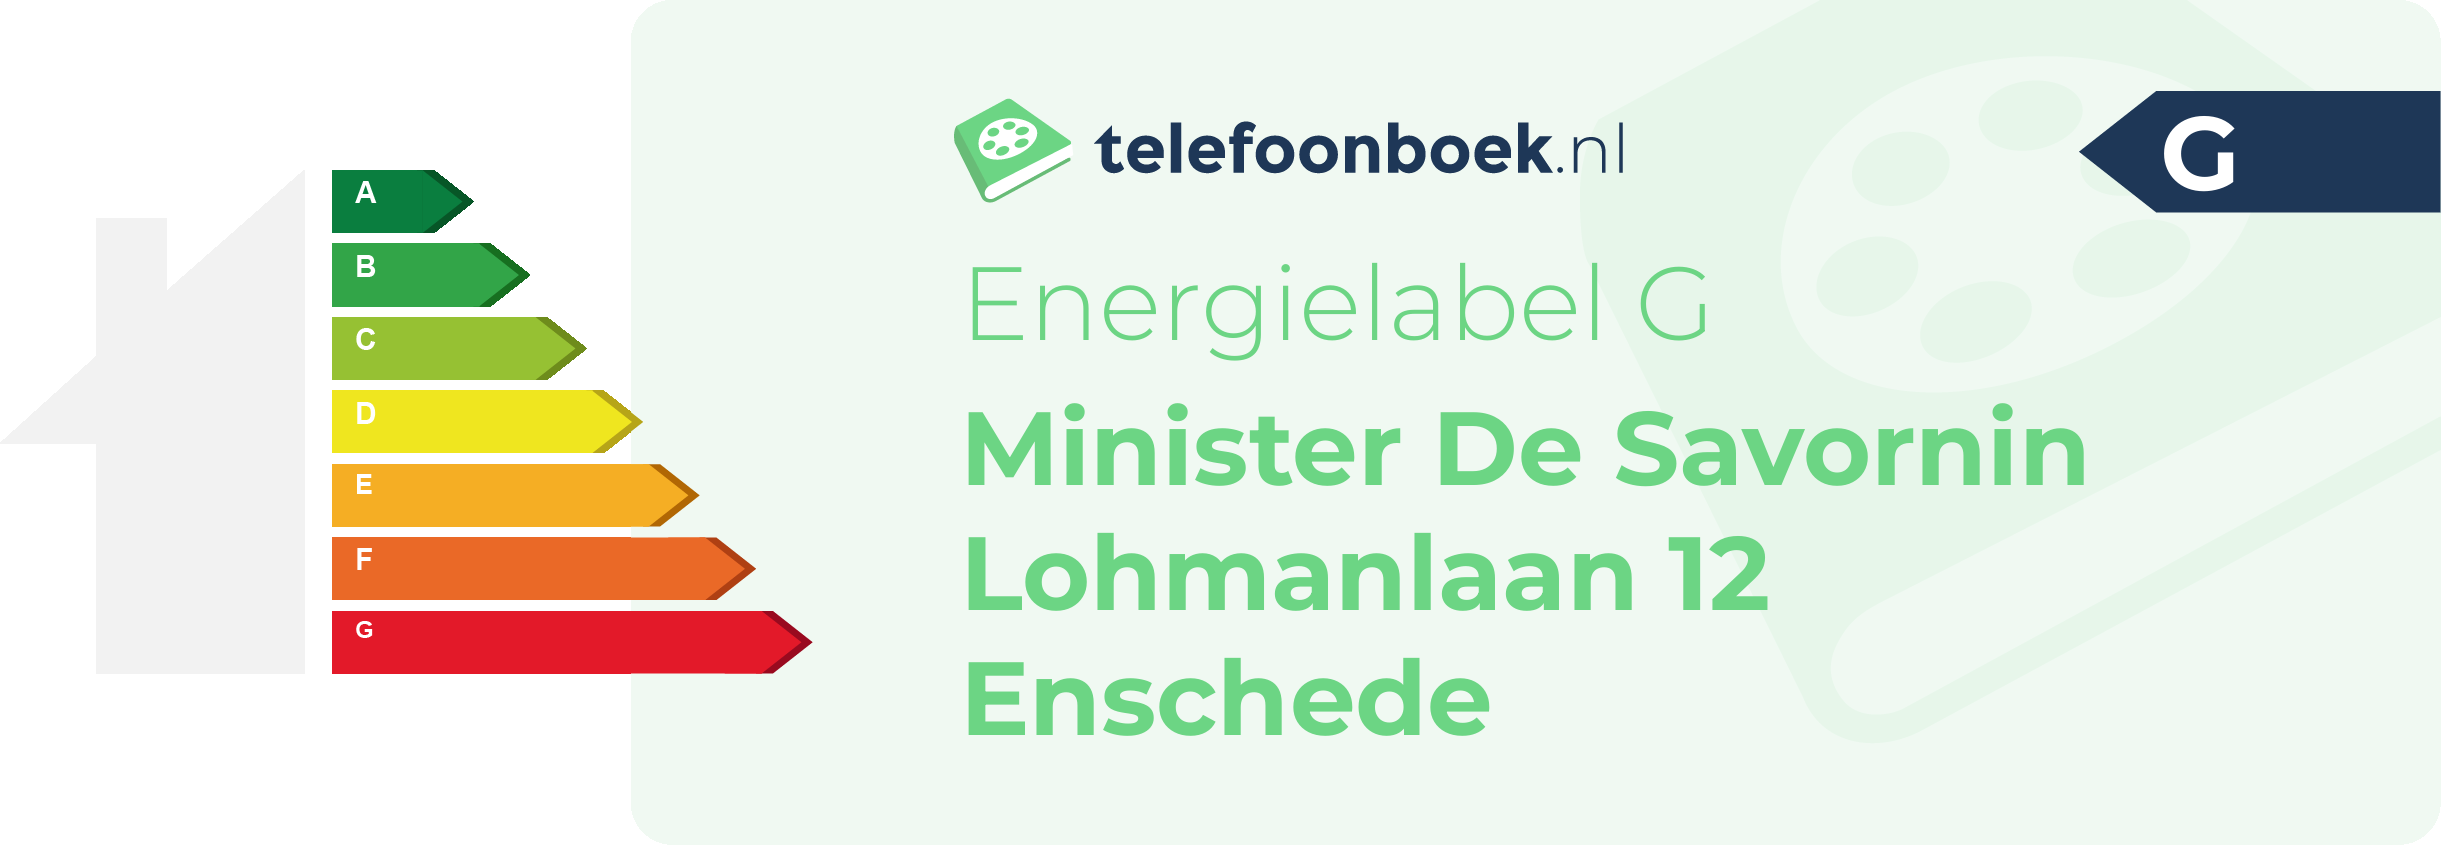 Energielabel Minister De Savornin Lohmanlaan 12 Enschede